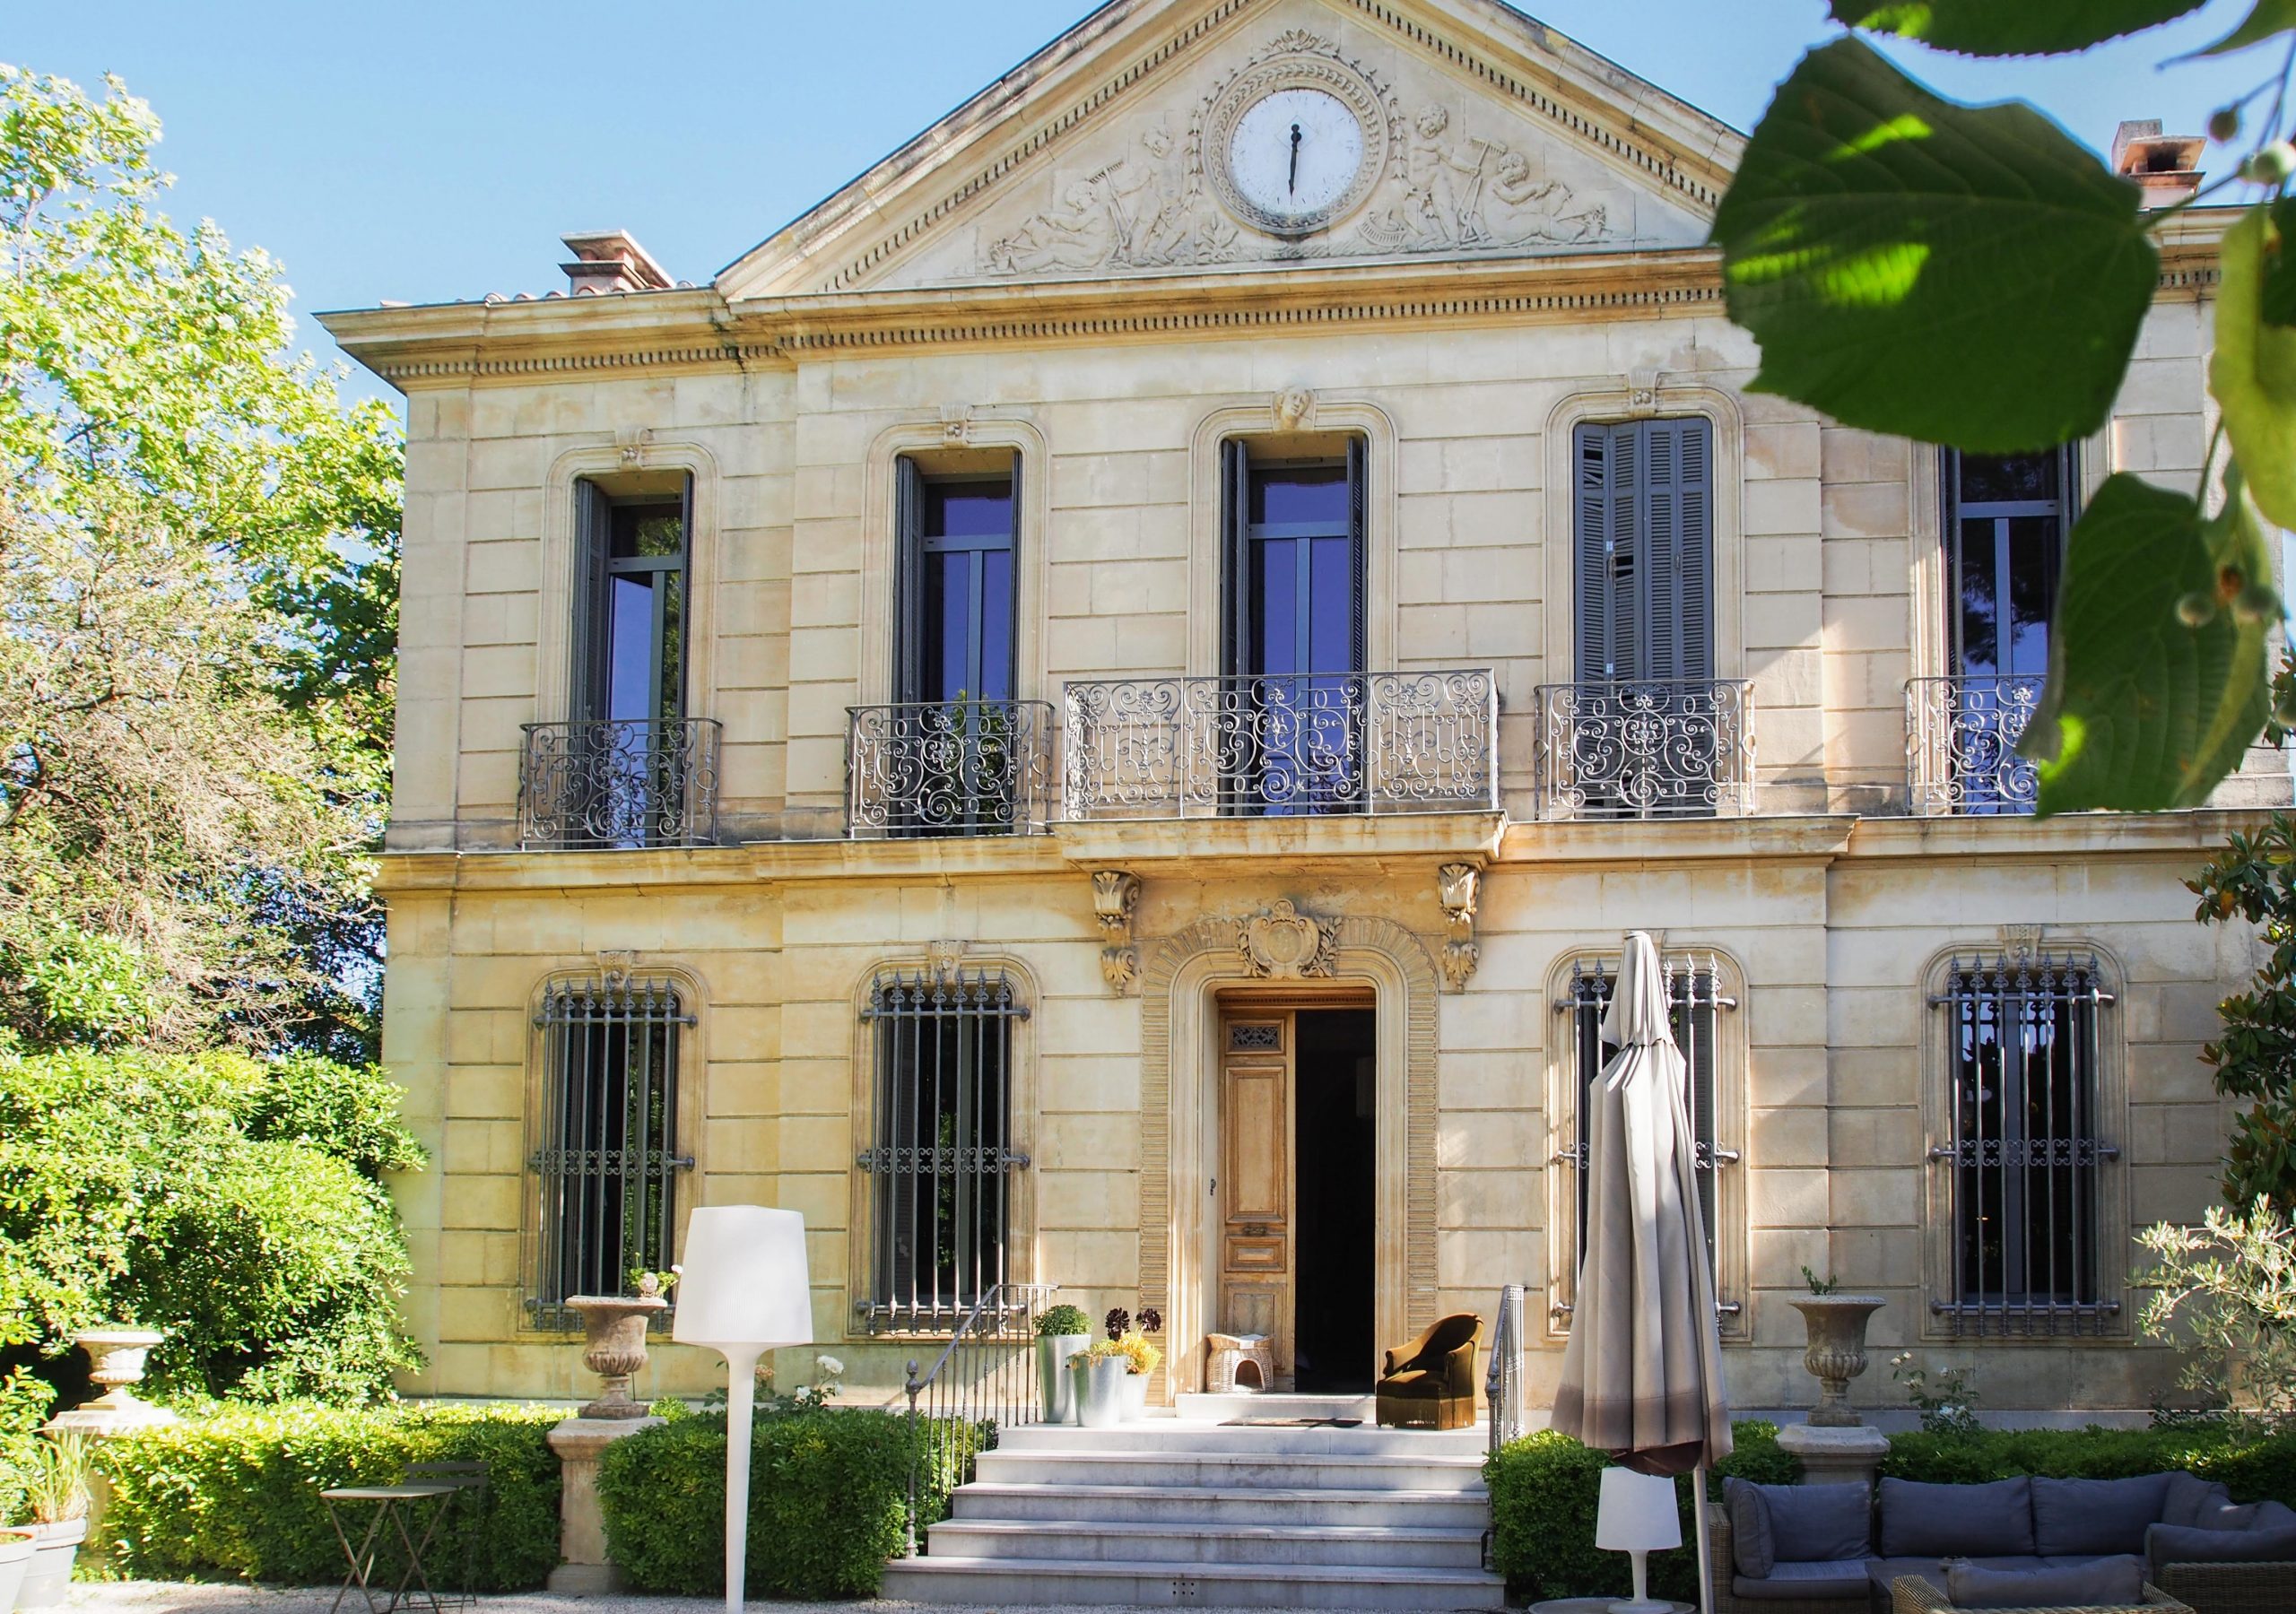 À Vendre, Une Maison De Maître Et Son Jardin Arboré À Marseille ... pour Salon De Jardin Castorama Près De Saint-Pierre